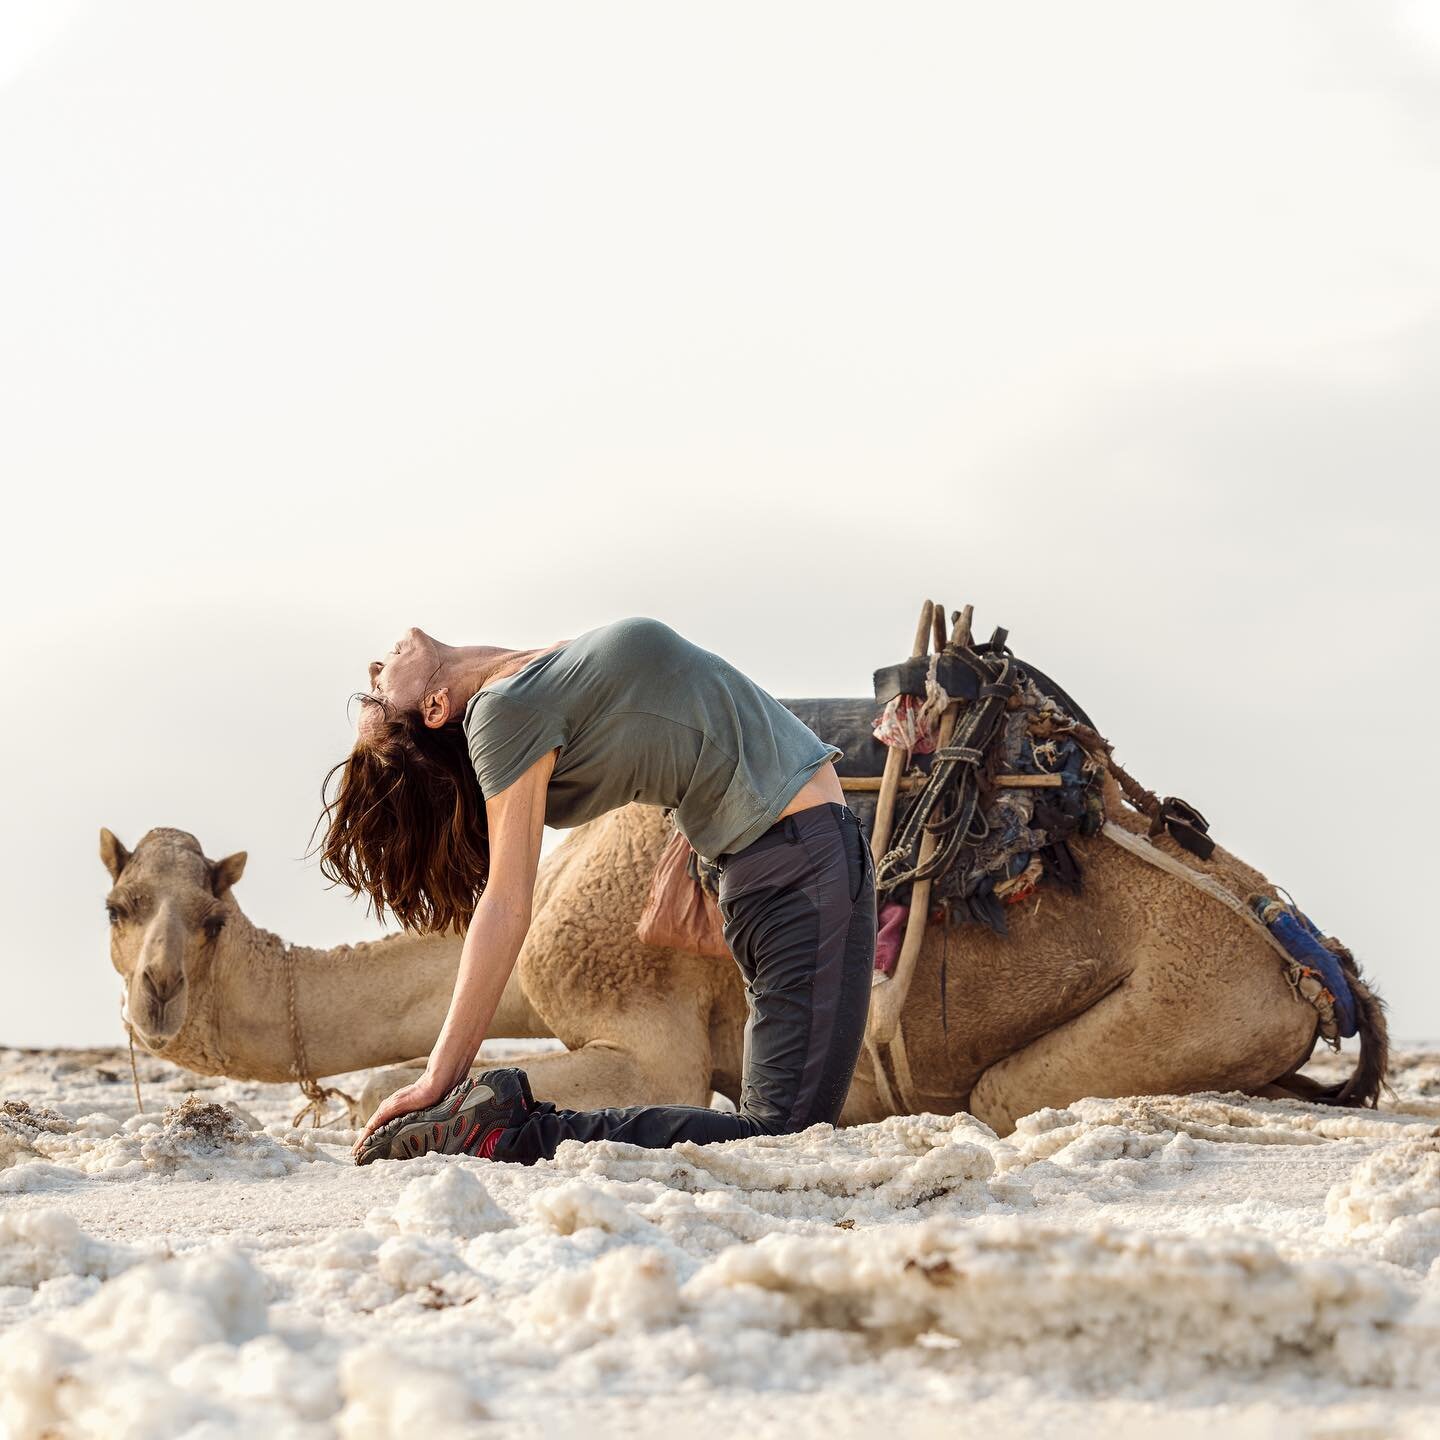 La postura del camello (Ustrasana)🐫 

Una  pose que me cuesta mucho pero que intento incluir siempre en mi práctica por sus enormes beneficios😉
*Potencia la energía y combate la fatiga.
*Puede ayudar a construir autoestima y confianza 
* Mejora l